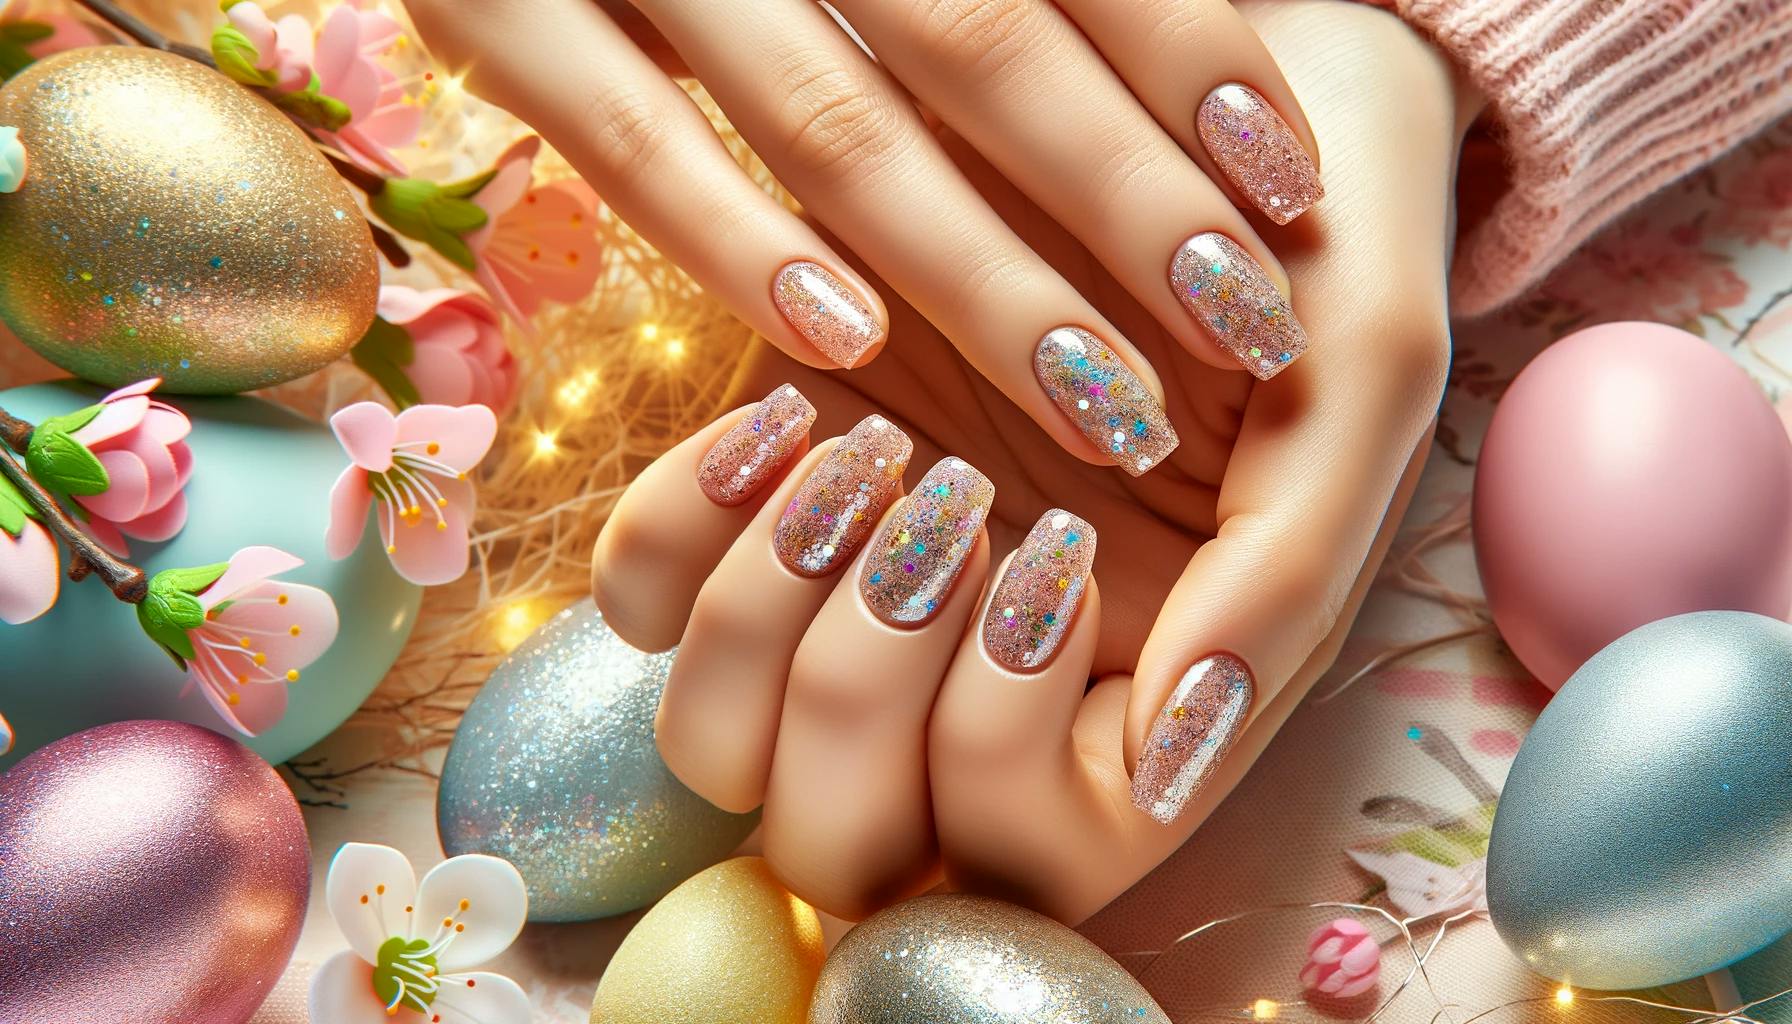 Brokatowe wykończenia paznokci na święta wielkanocne, dodające świątecznego i glamour akcentu, na tle wiosennej sceny z kwitnącymi kwiatami i pastelowymi barwami, idealne dla błyszczącej Wielkanocy